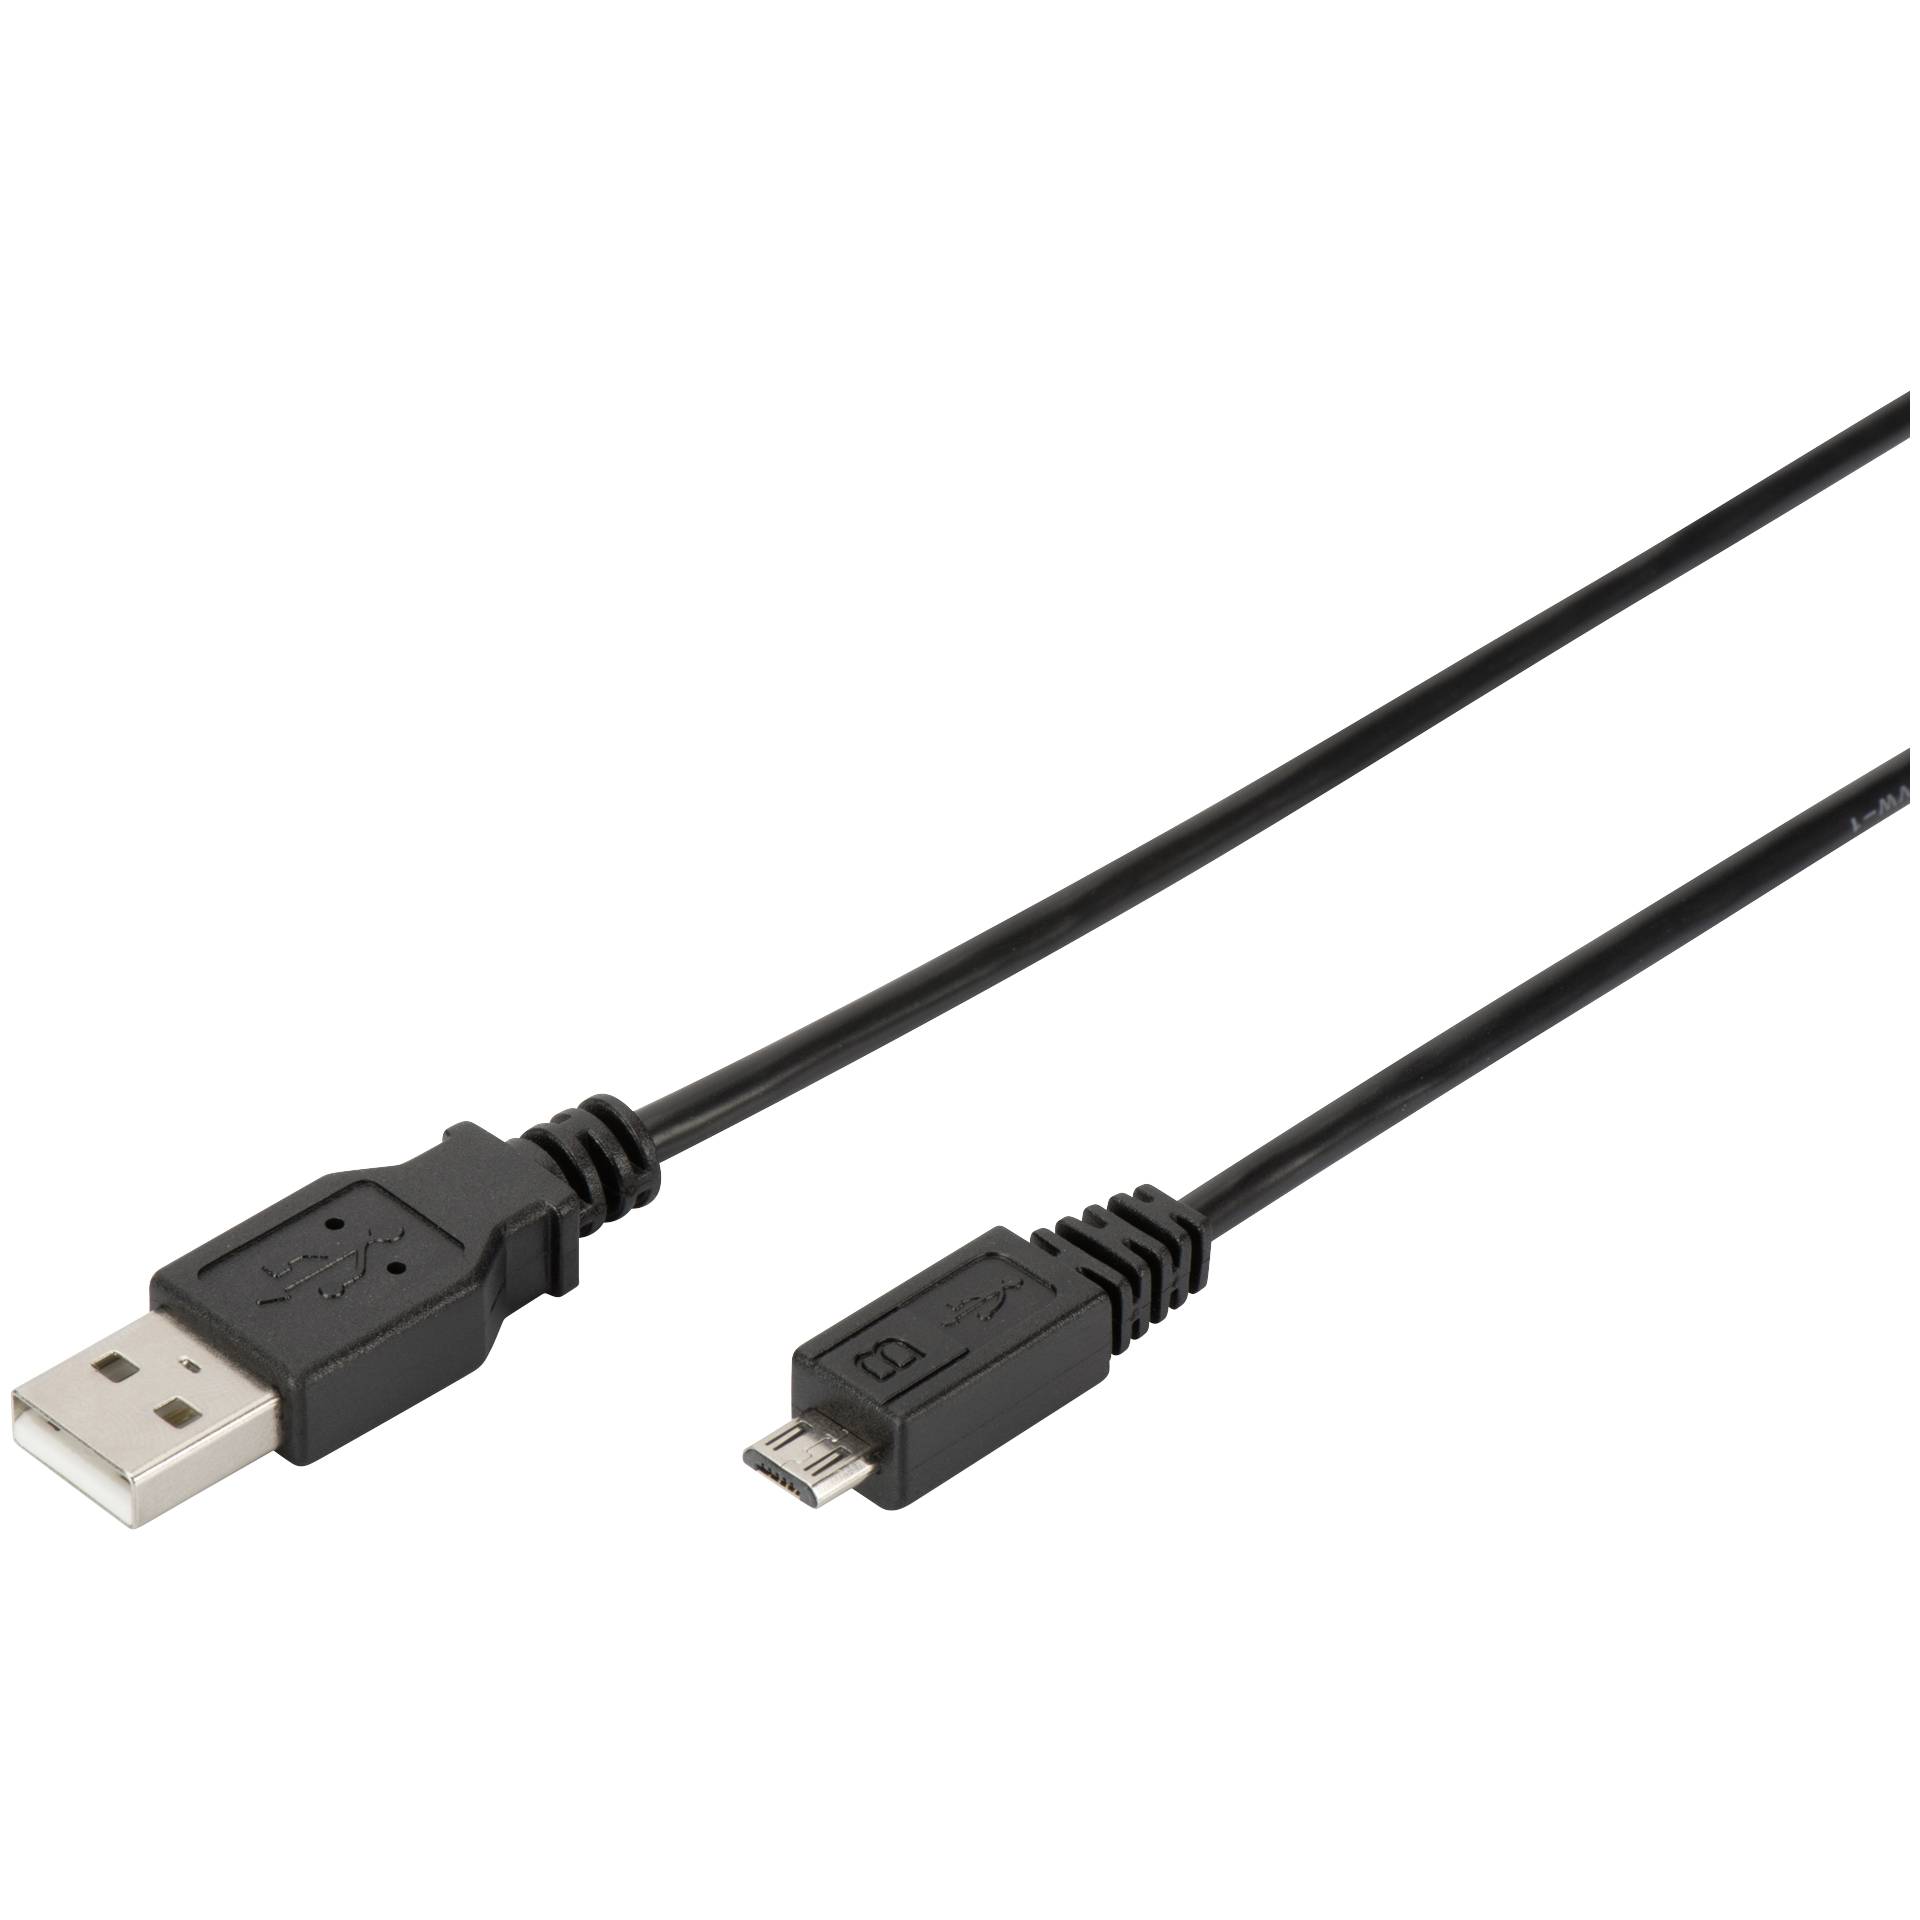 Digitus USB 2.0 cavo connessione tipo A USB 2.0 compatibile